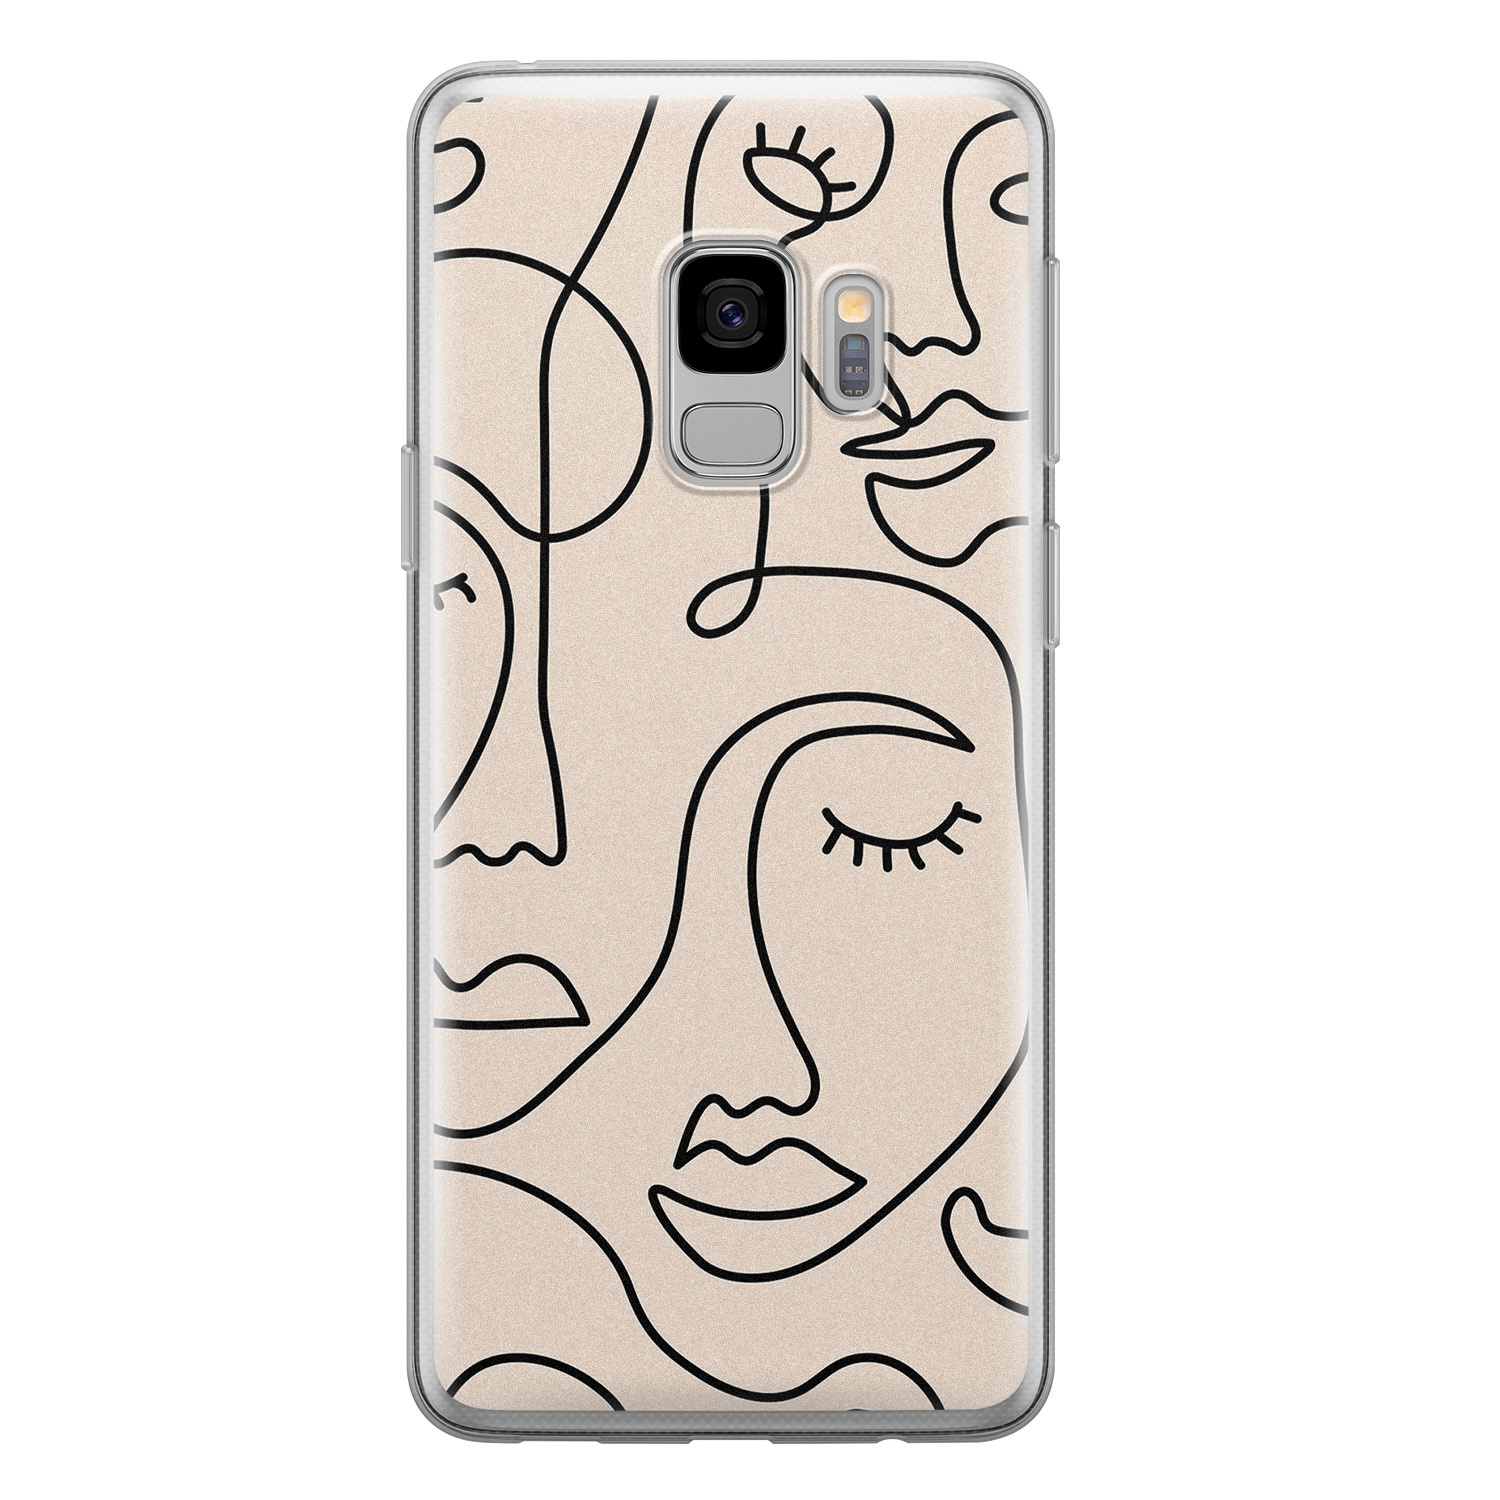 Leuke Telefoonhoesjes Samsung Galaxy S9 siliconen hoesje - Abstract gezicht lijnen